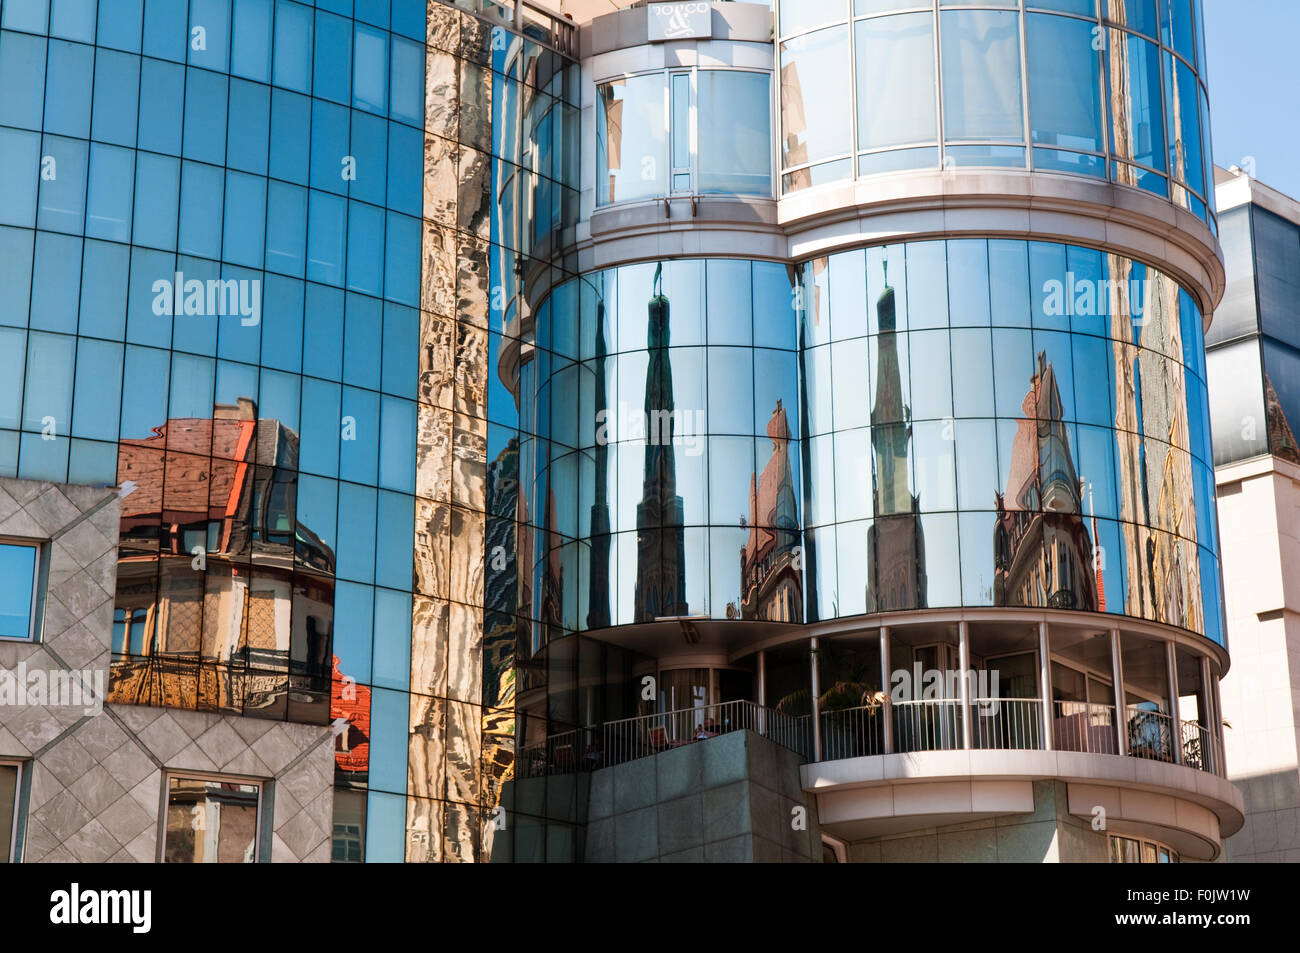 Les bâtiments reflètent dans les fenêtres en miroir de la maison Haas à Vienne, Autriche conçu par l'architecte autrichien Hans Hollein Banque D'Images